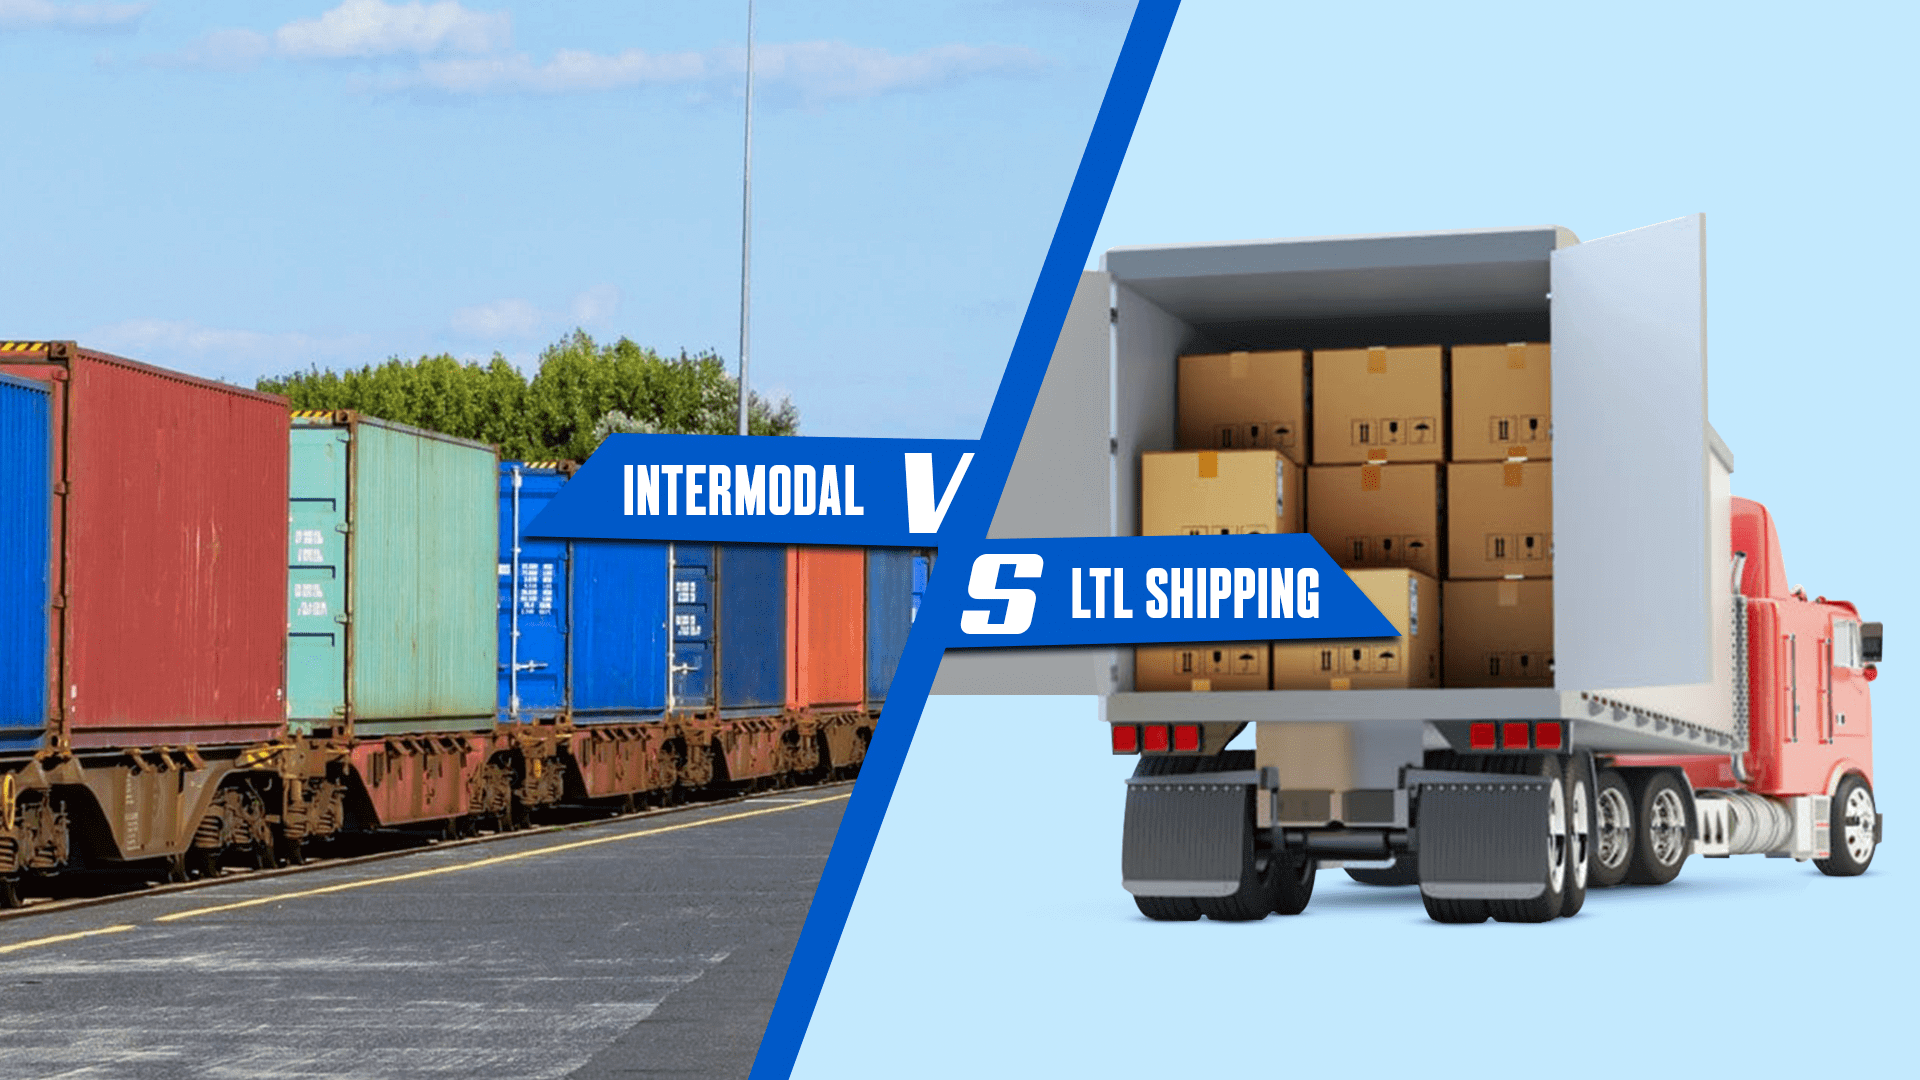 Intermodal vs ltl shipping